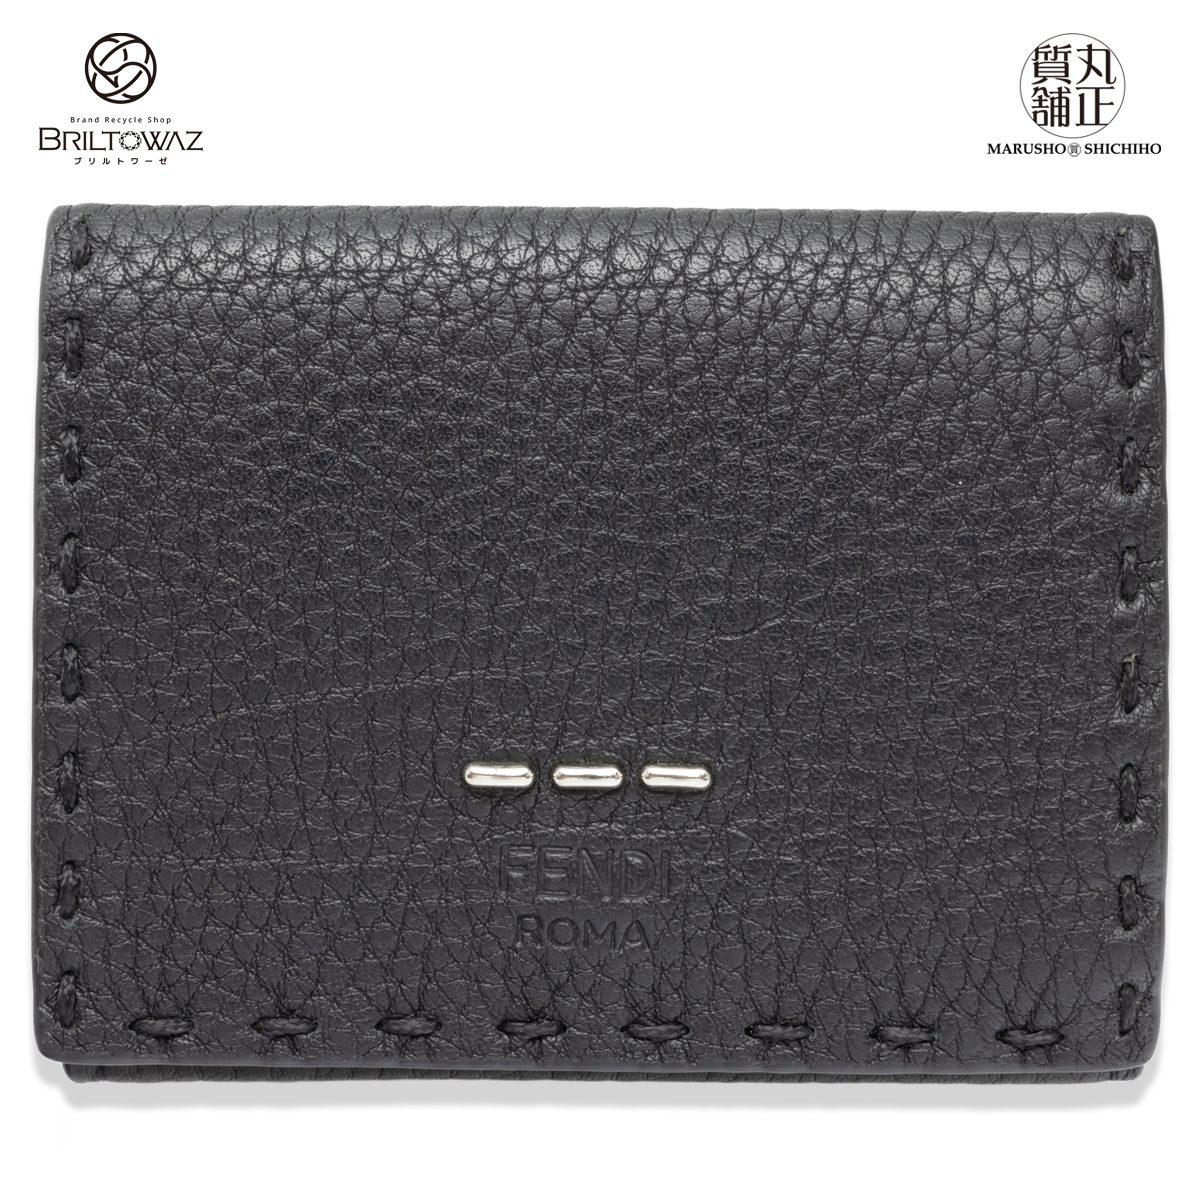 フェンディ セレリア メンズ 三つ折り コンパクト財布 7M0280 ミニ財布 ローマンレザー 黒 FENDI メンズ レディース （M211695)